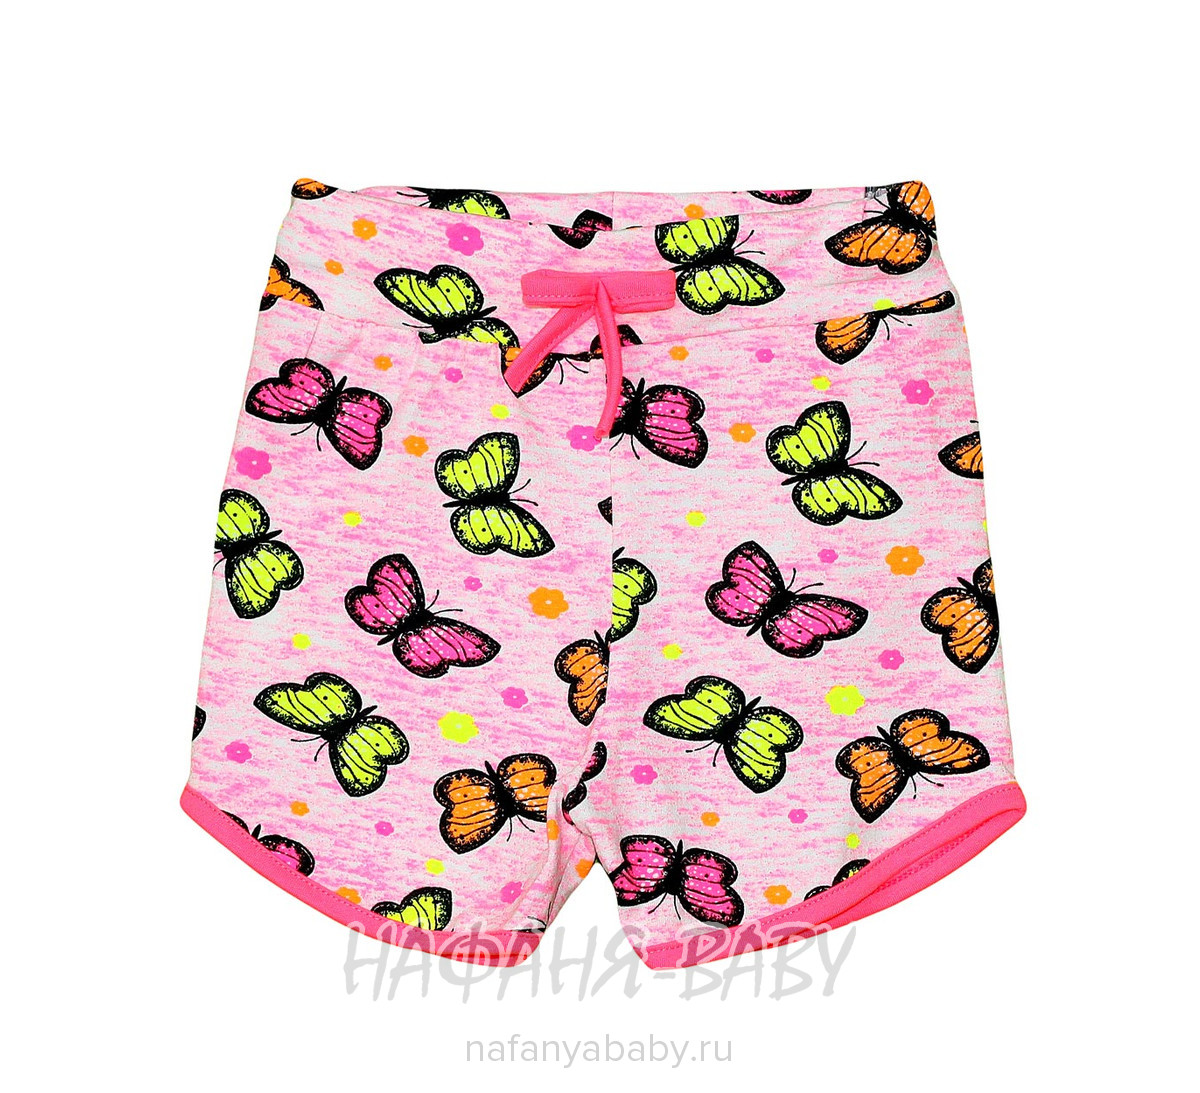 Детские шорты для девочки BASAK, купить в интернет магазине Нафаня. арт: 3564.